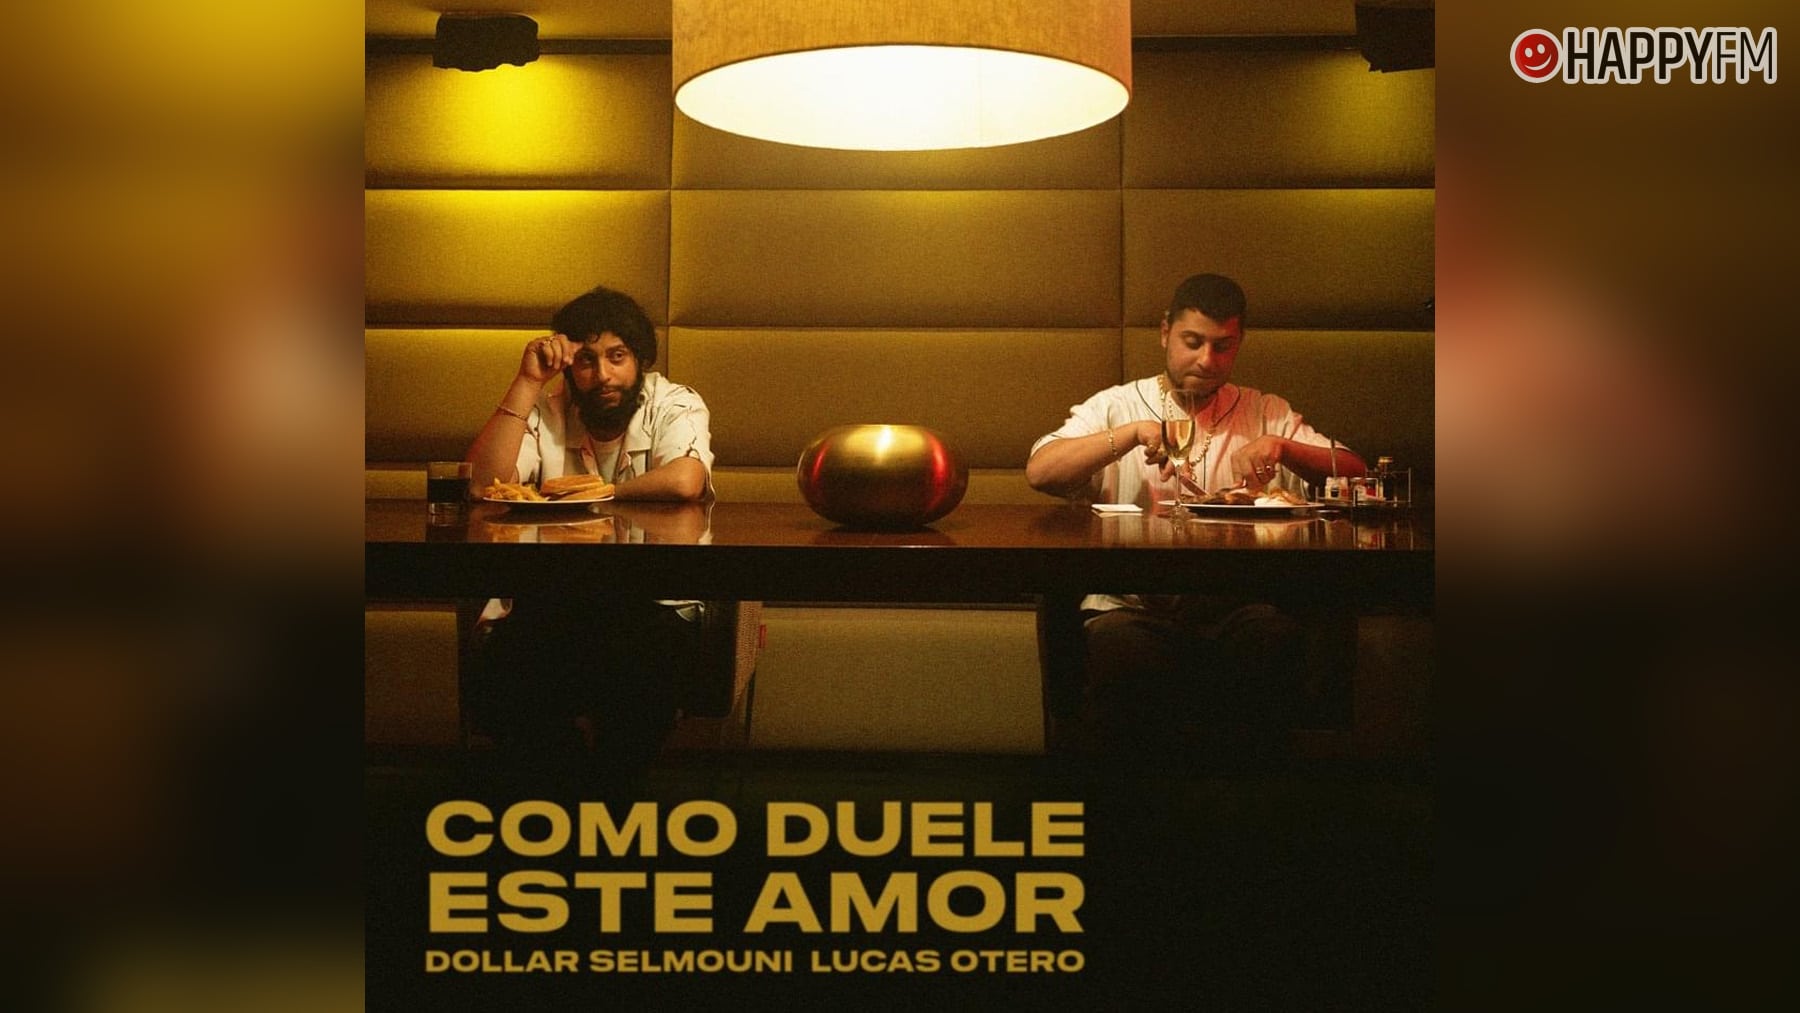 ‘Como duele este amor’, de Dollar Selmouni y Lucas Otero: letra y vídeo